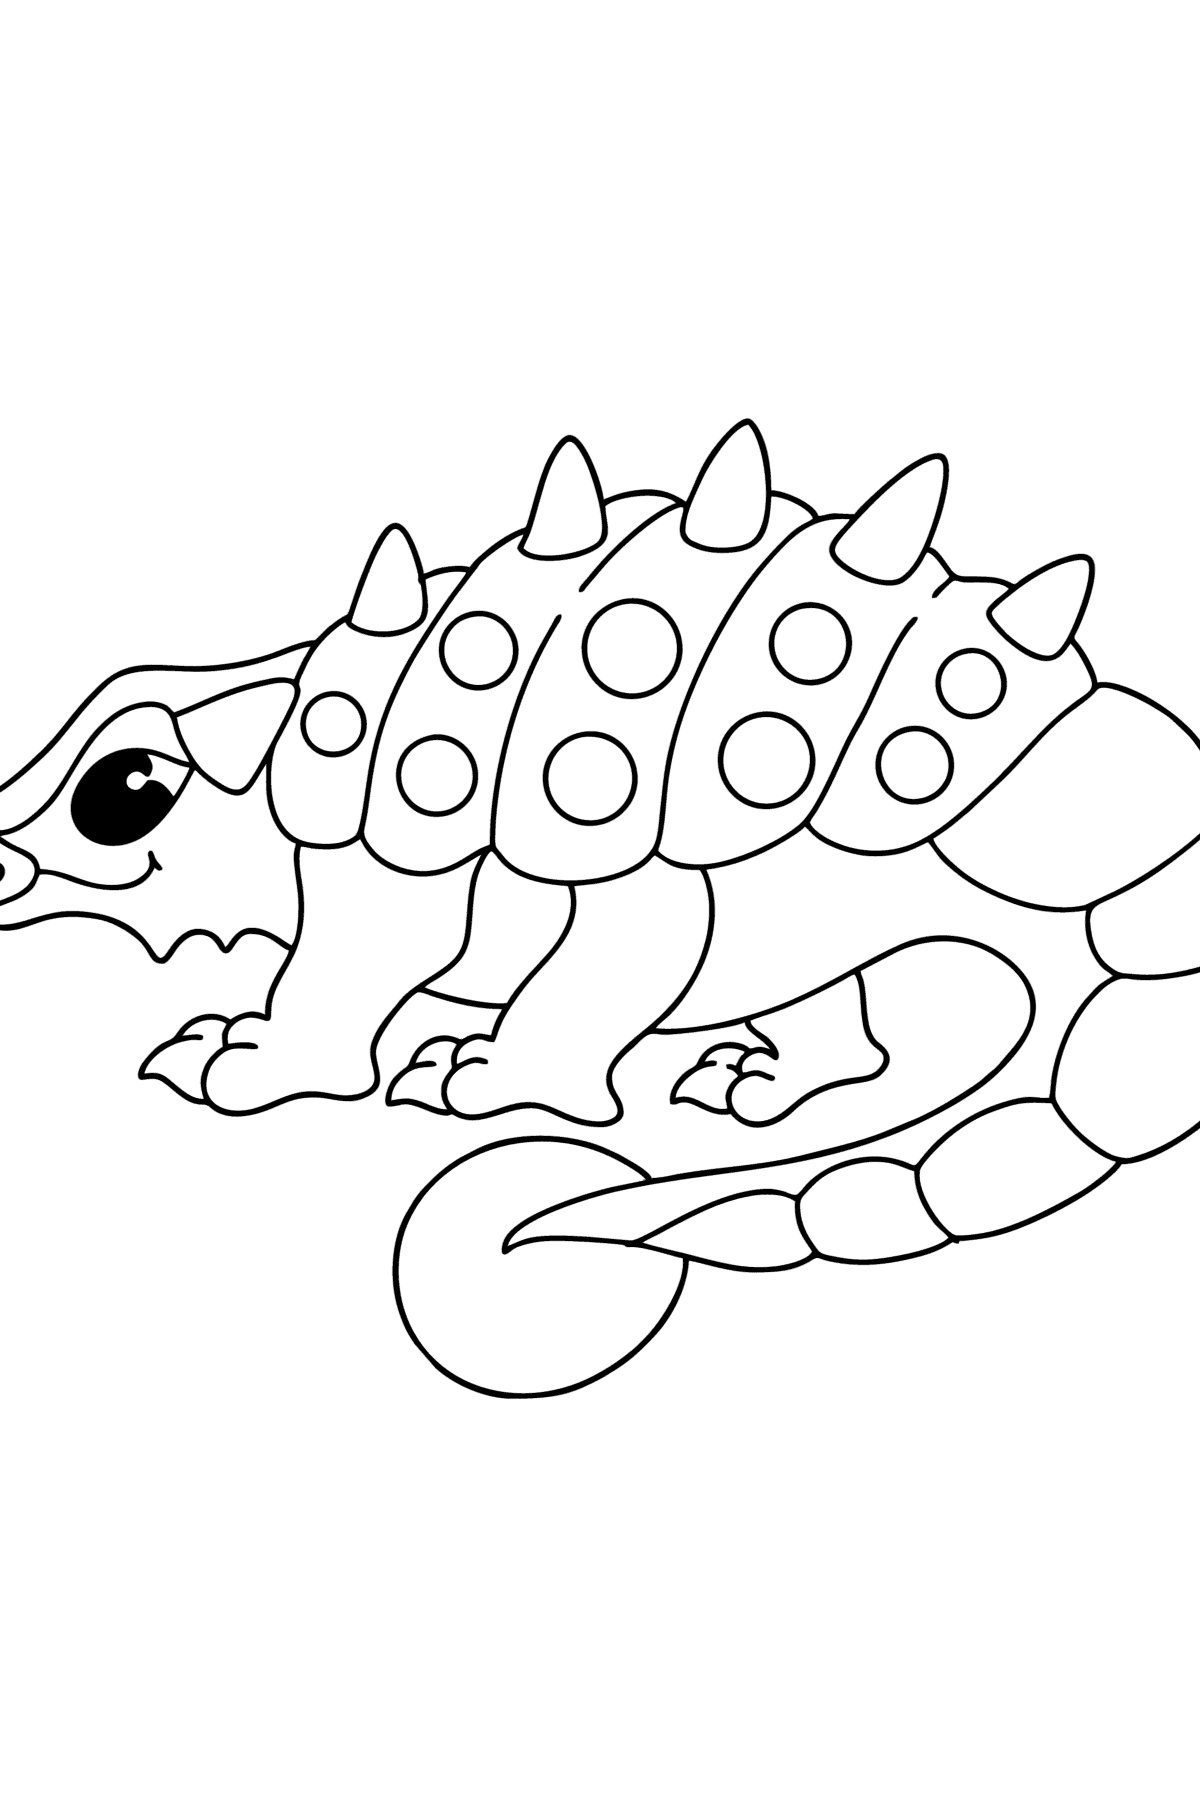 Desen de colorat anchilozaur - Desene de colorat pentru copii